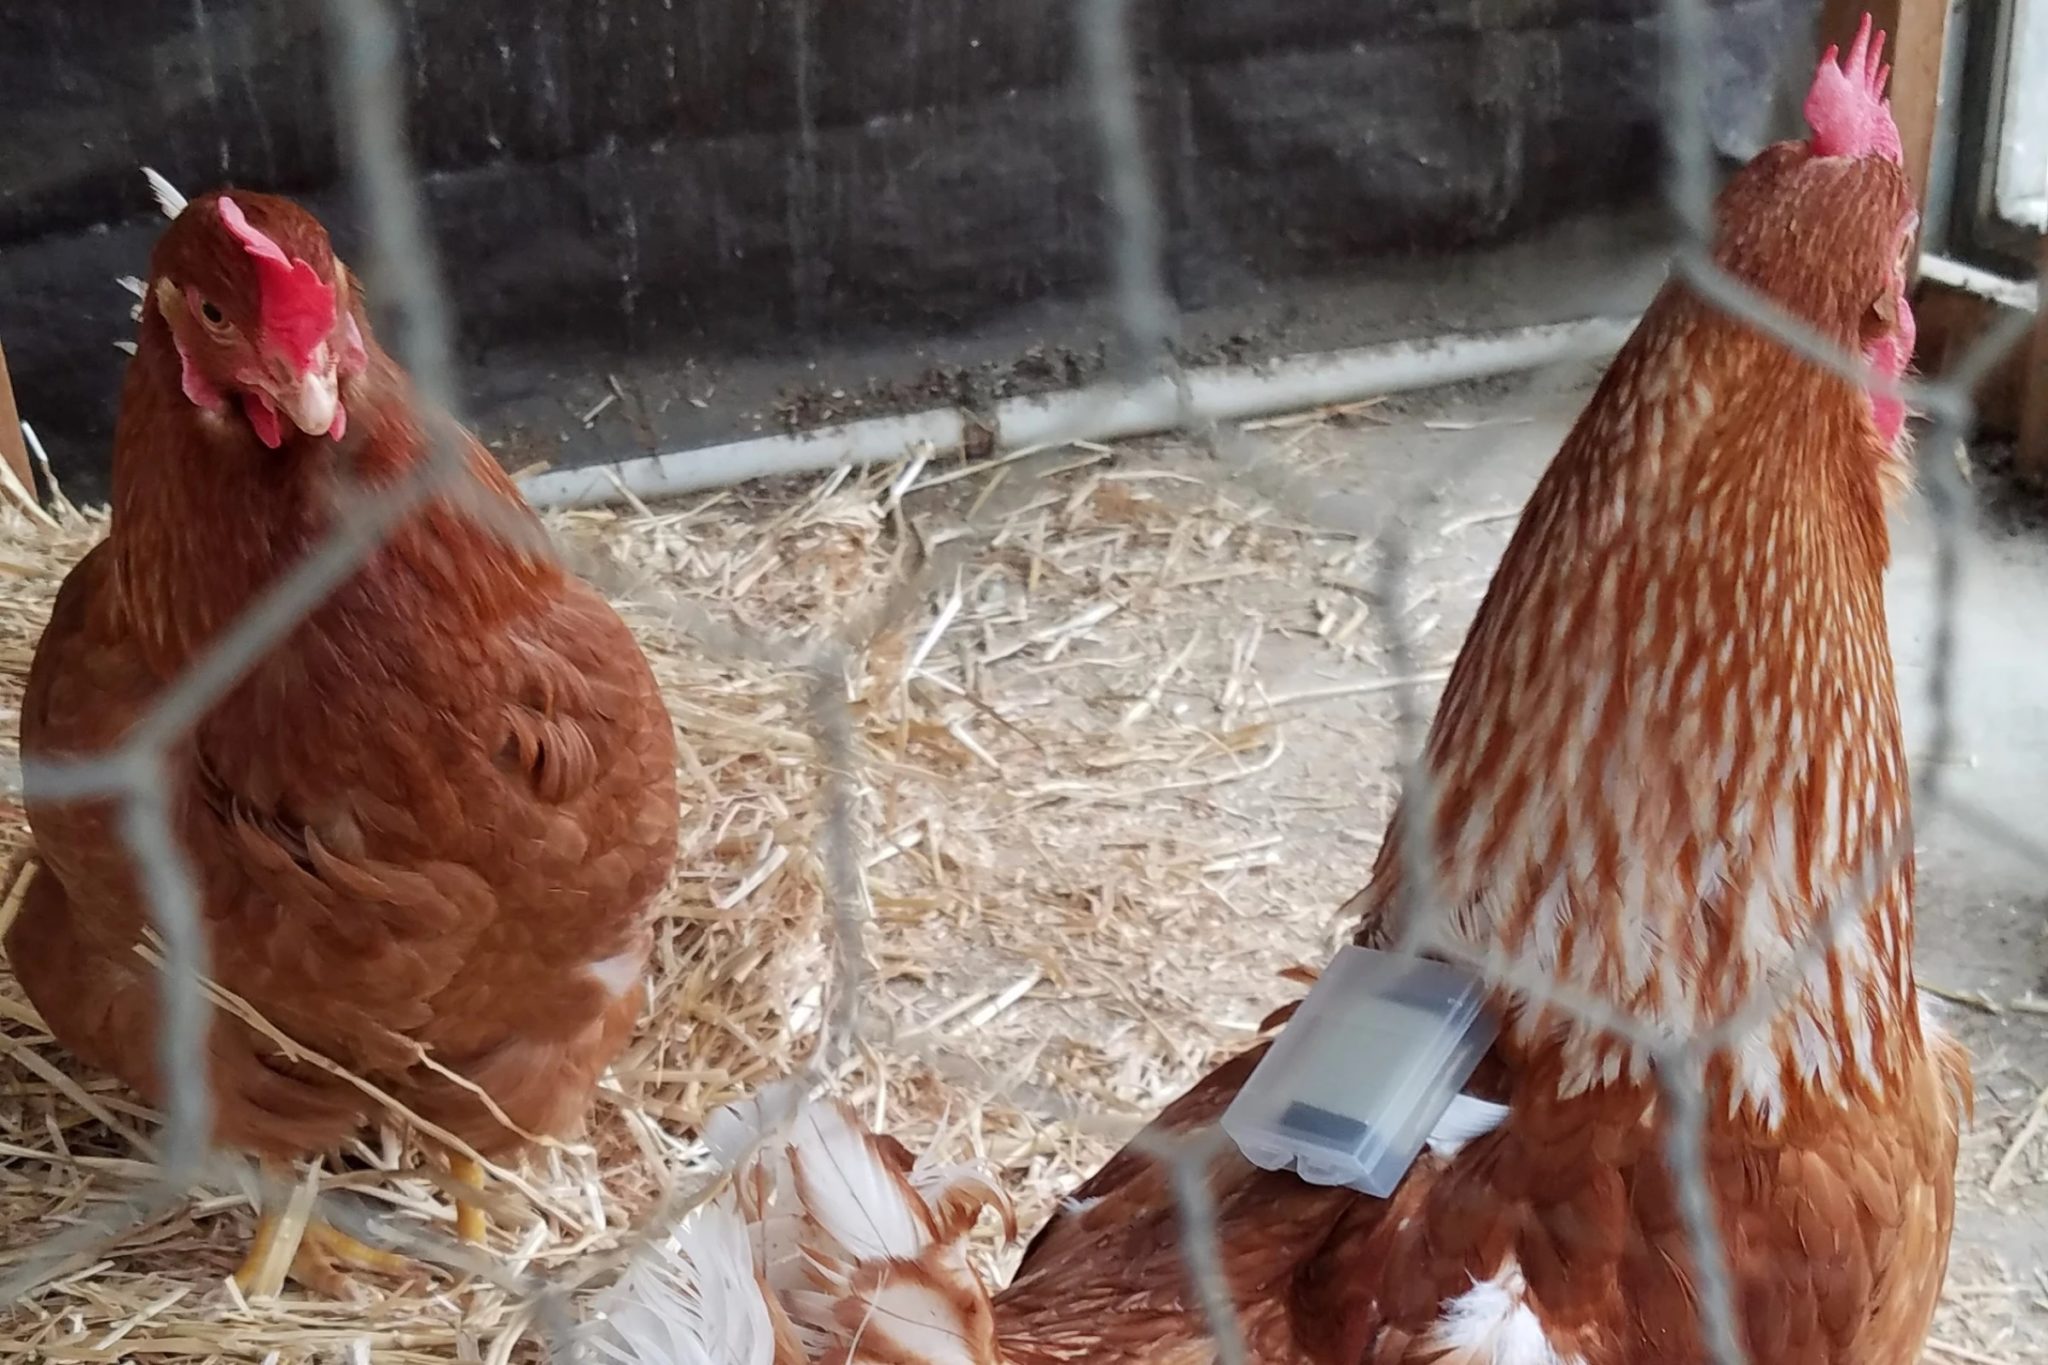 Des Fitbits pour poulets détectent les infestations d'acariens